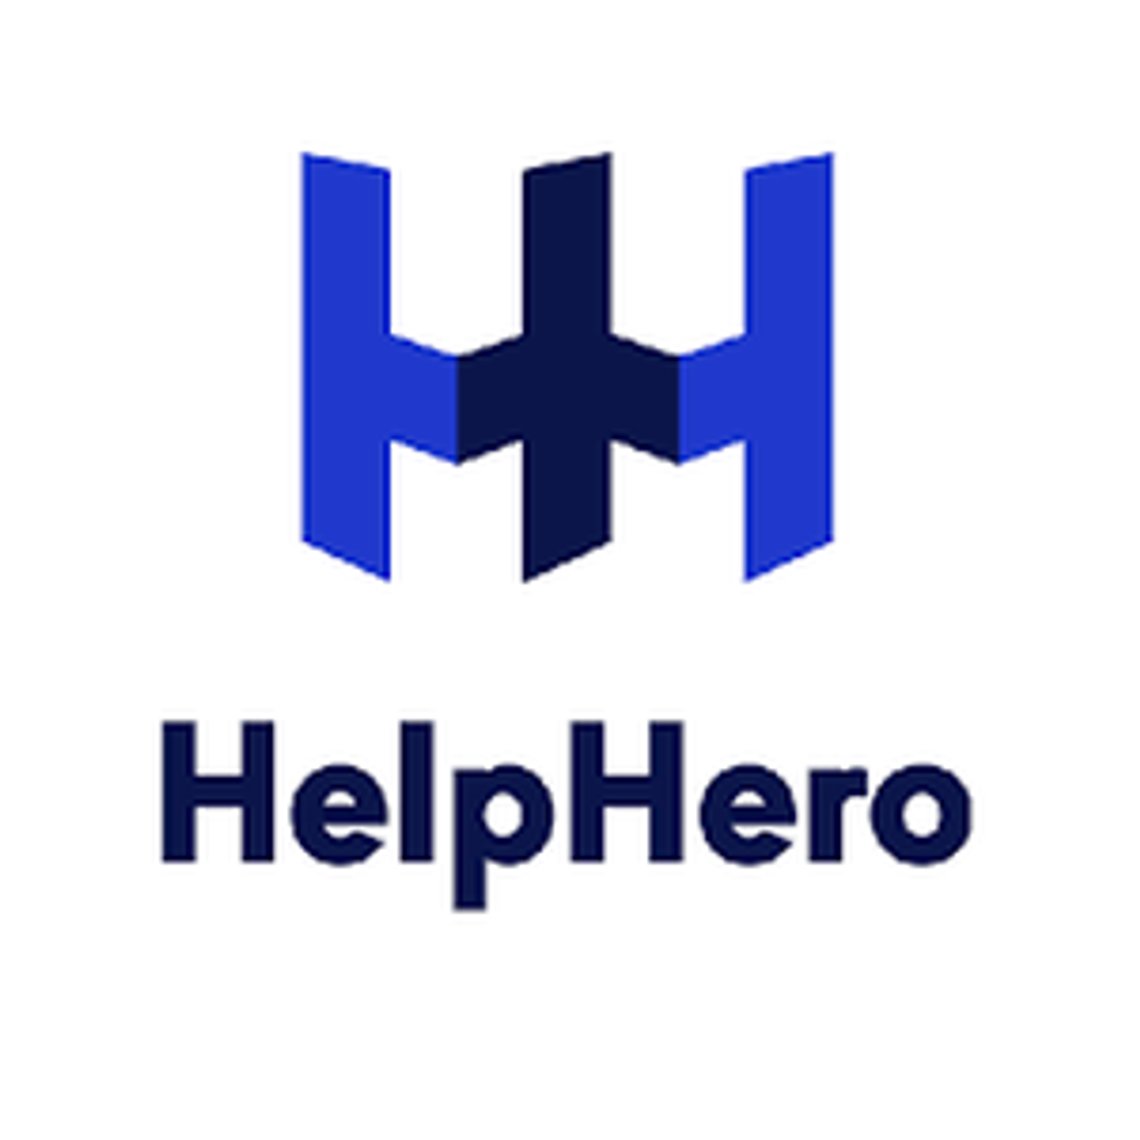 Help Hero - odzyskiwanie prowizji bankowych